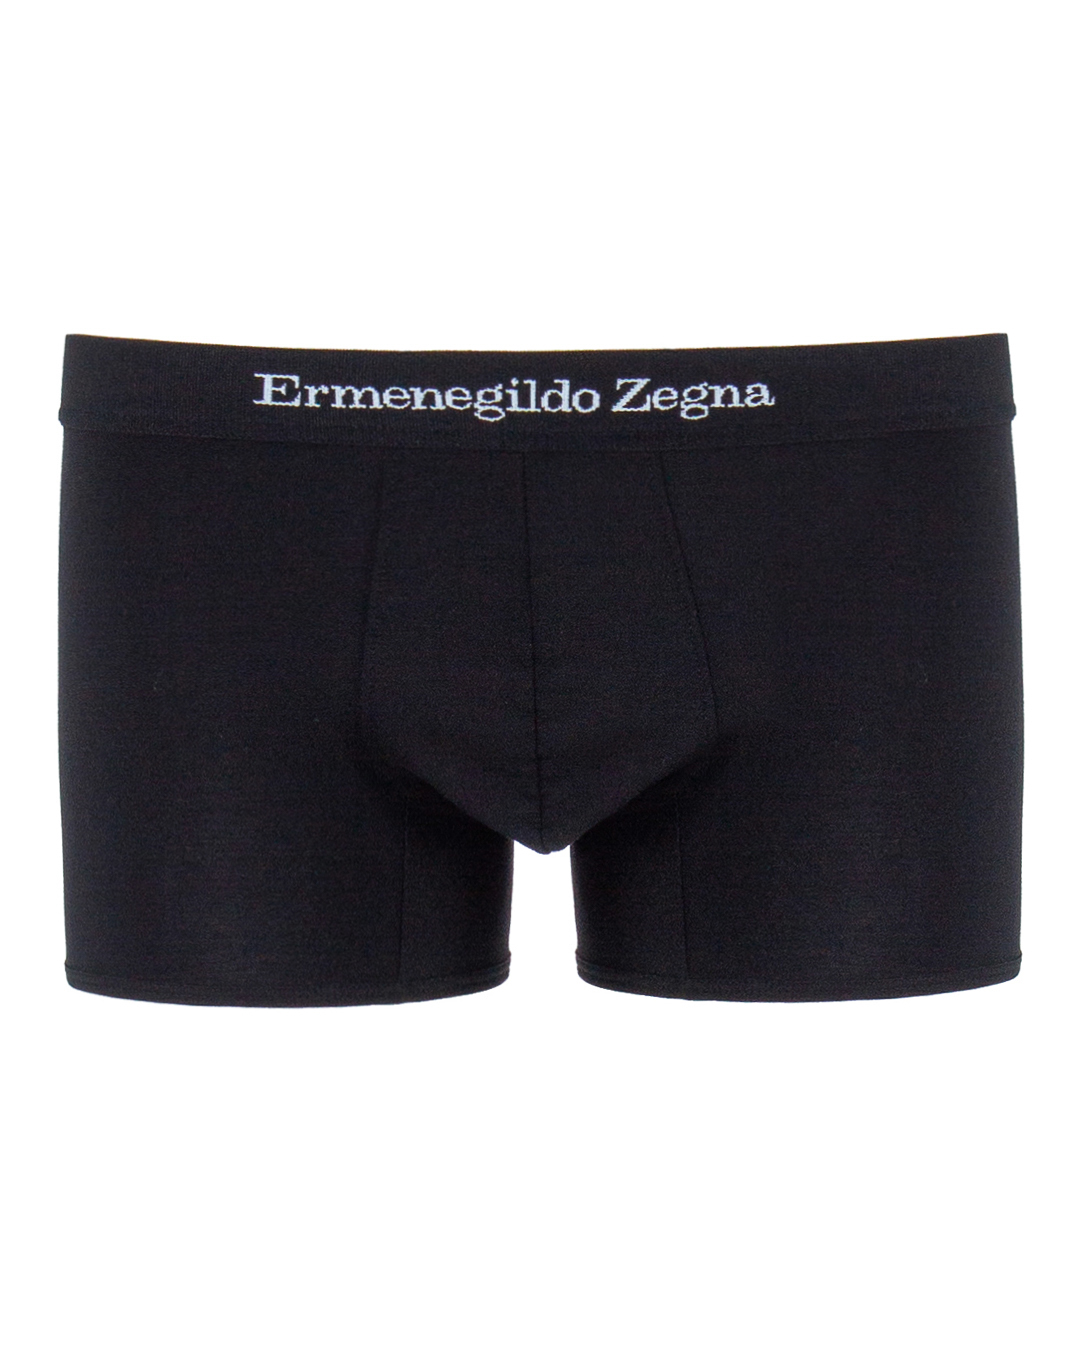 Ermenegildo Zegna с брендированной линией пояса  артикул  марки Ermenegildo Zegna купить за 5900 руб.